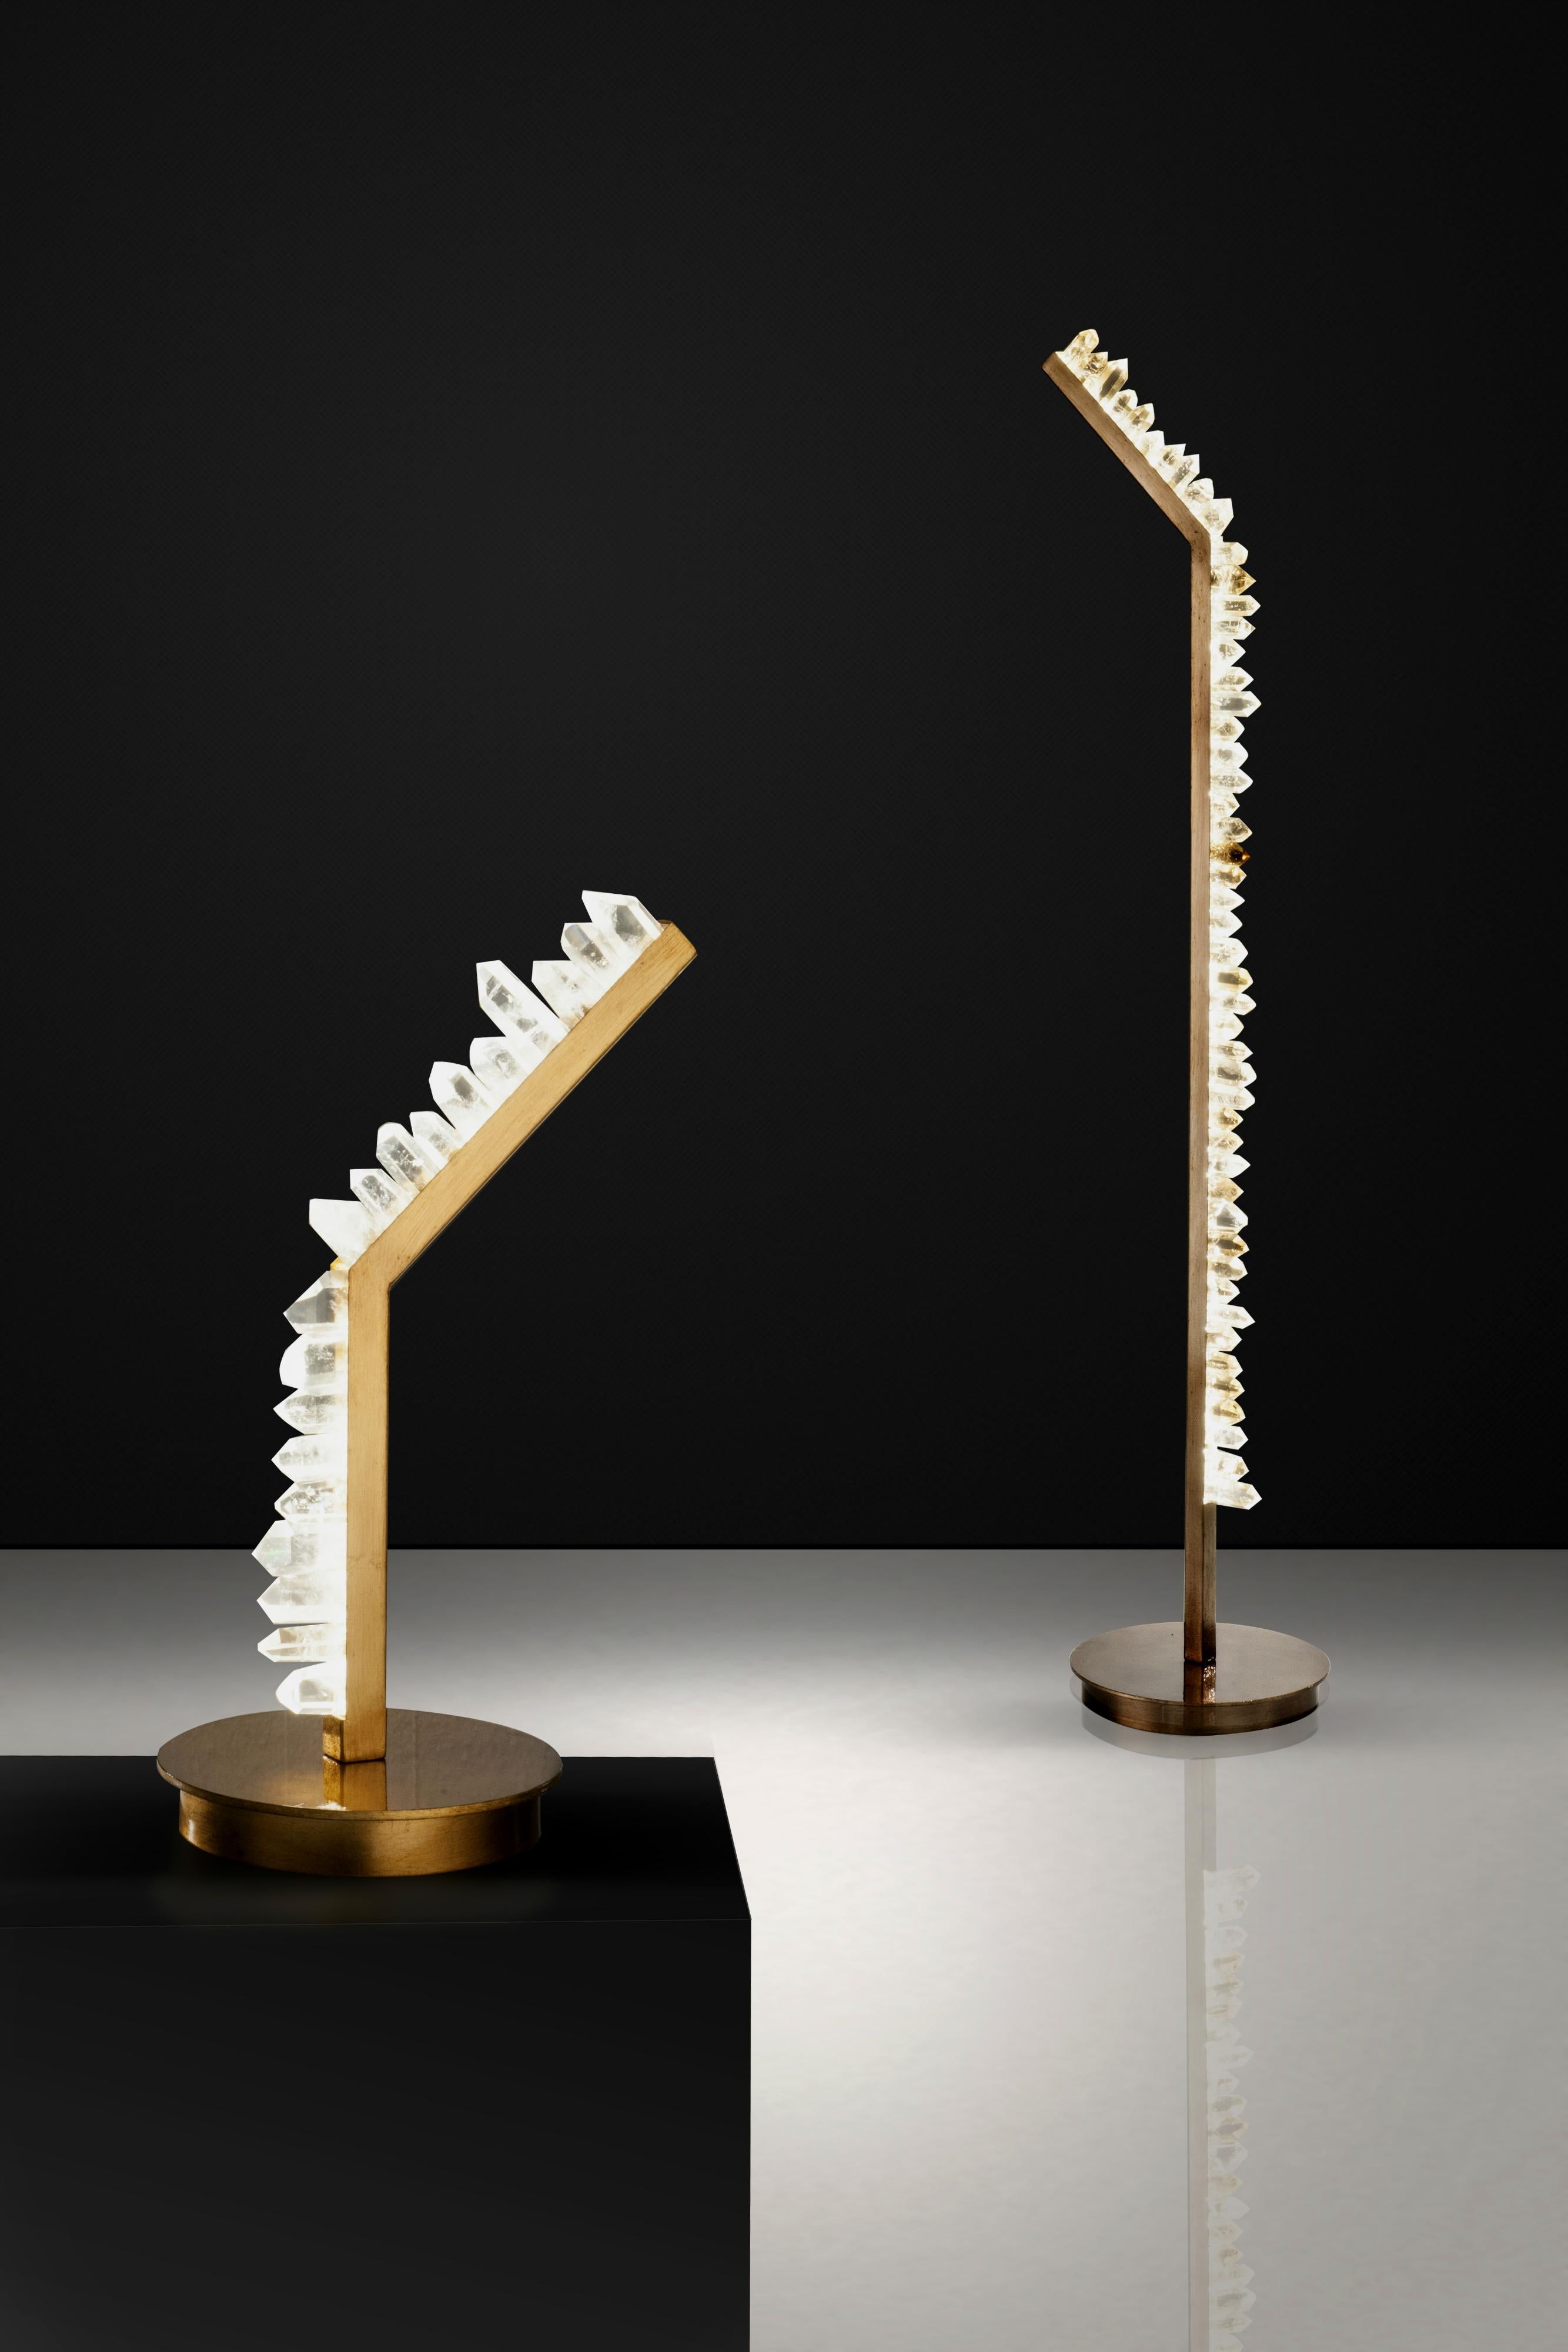 Lampe de table en quartz blanc sculptée à la main par Aver
Dimensions : 60 x 30 x 20 cm : 60 x 30 x 20 cm.
01 x LED 7W / 450 lumens.